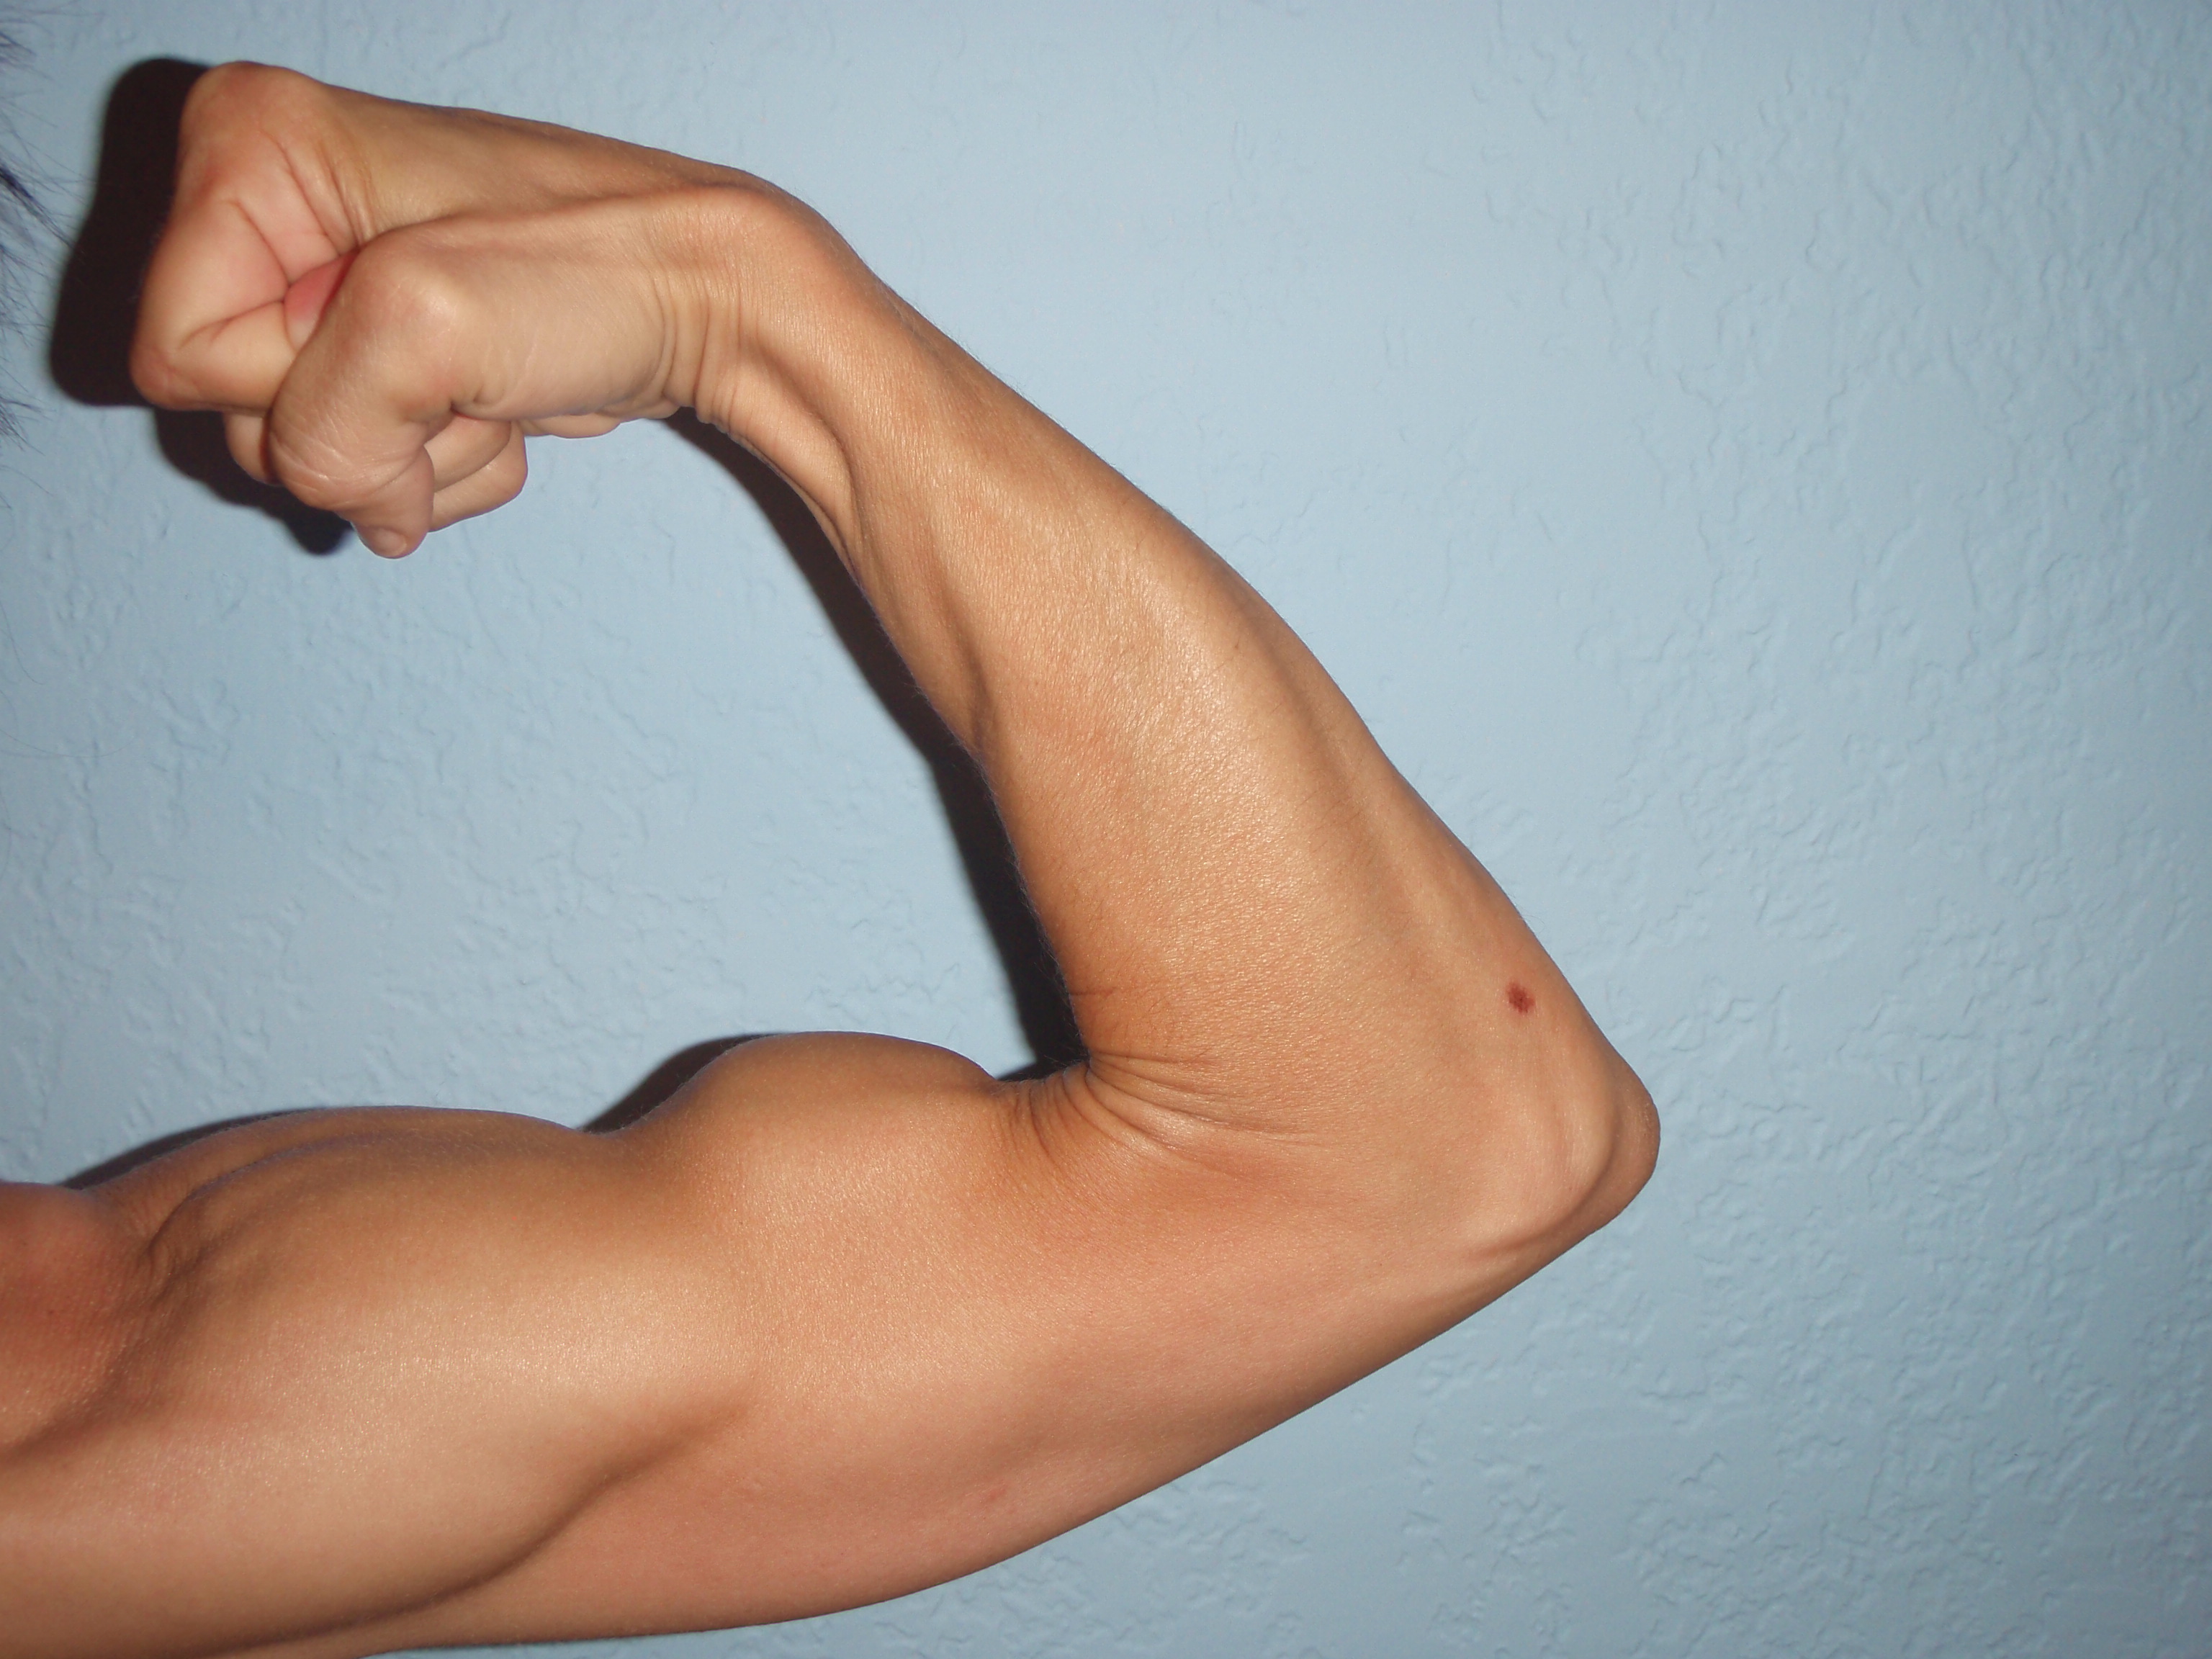 MizFit training: biceps, triceps, & shoulders. - Carla Birnberg